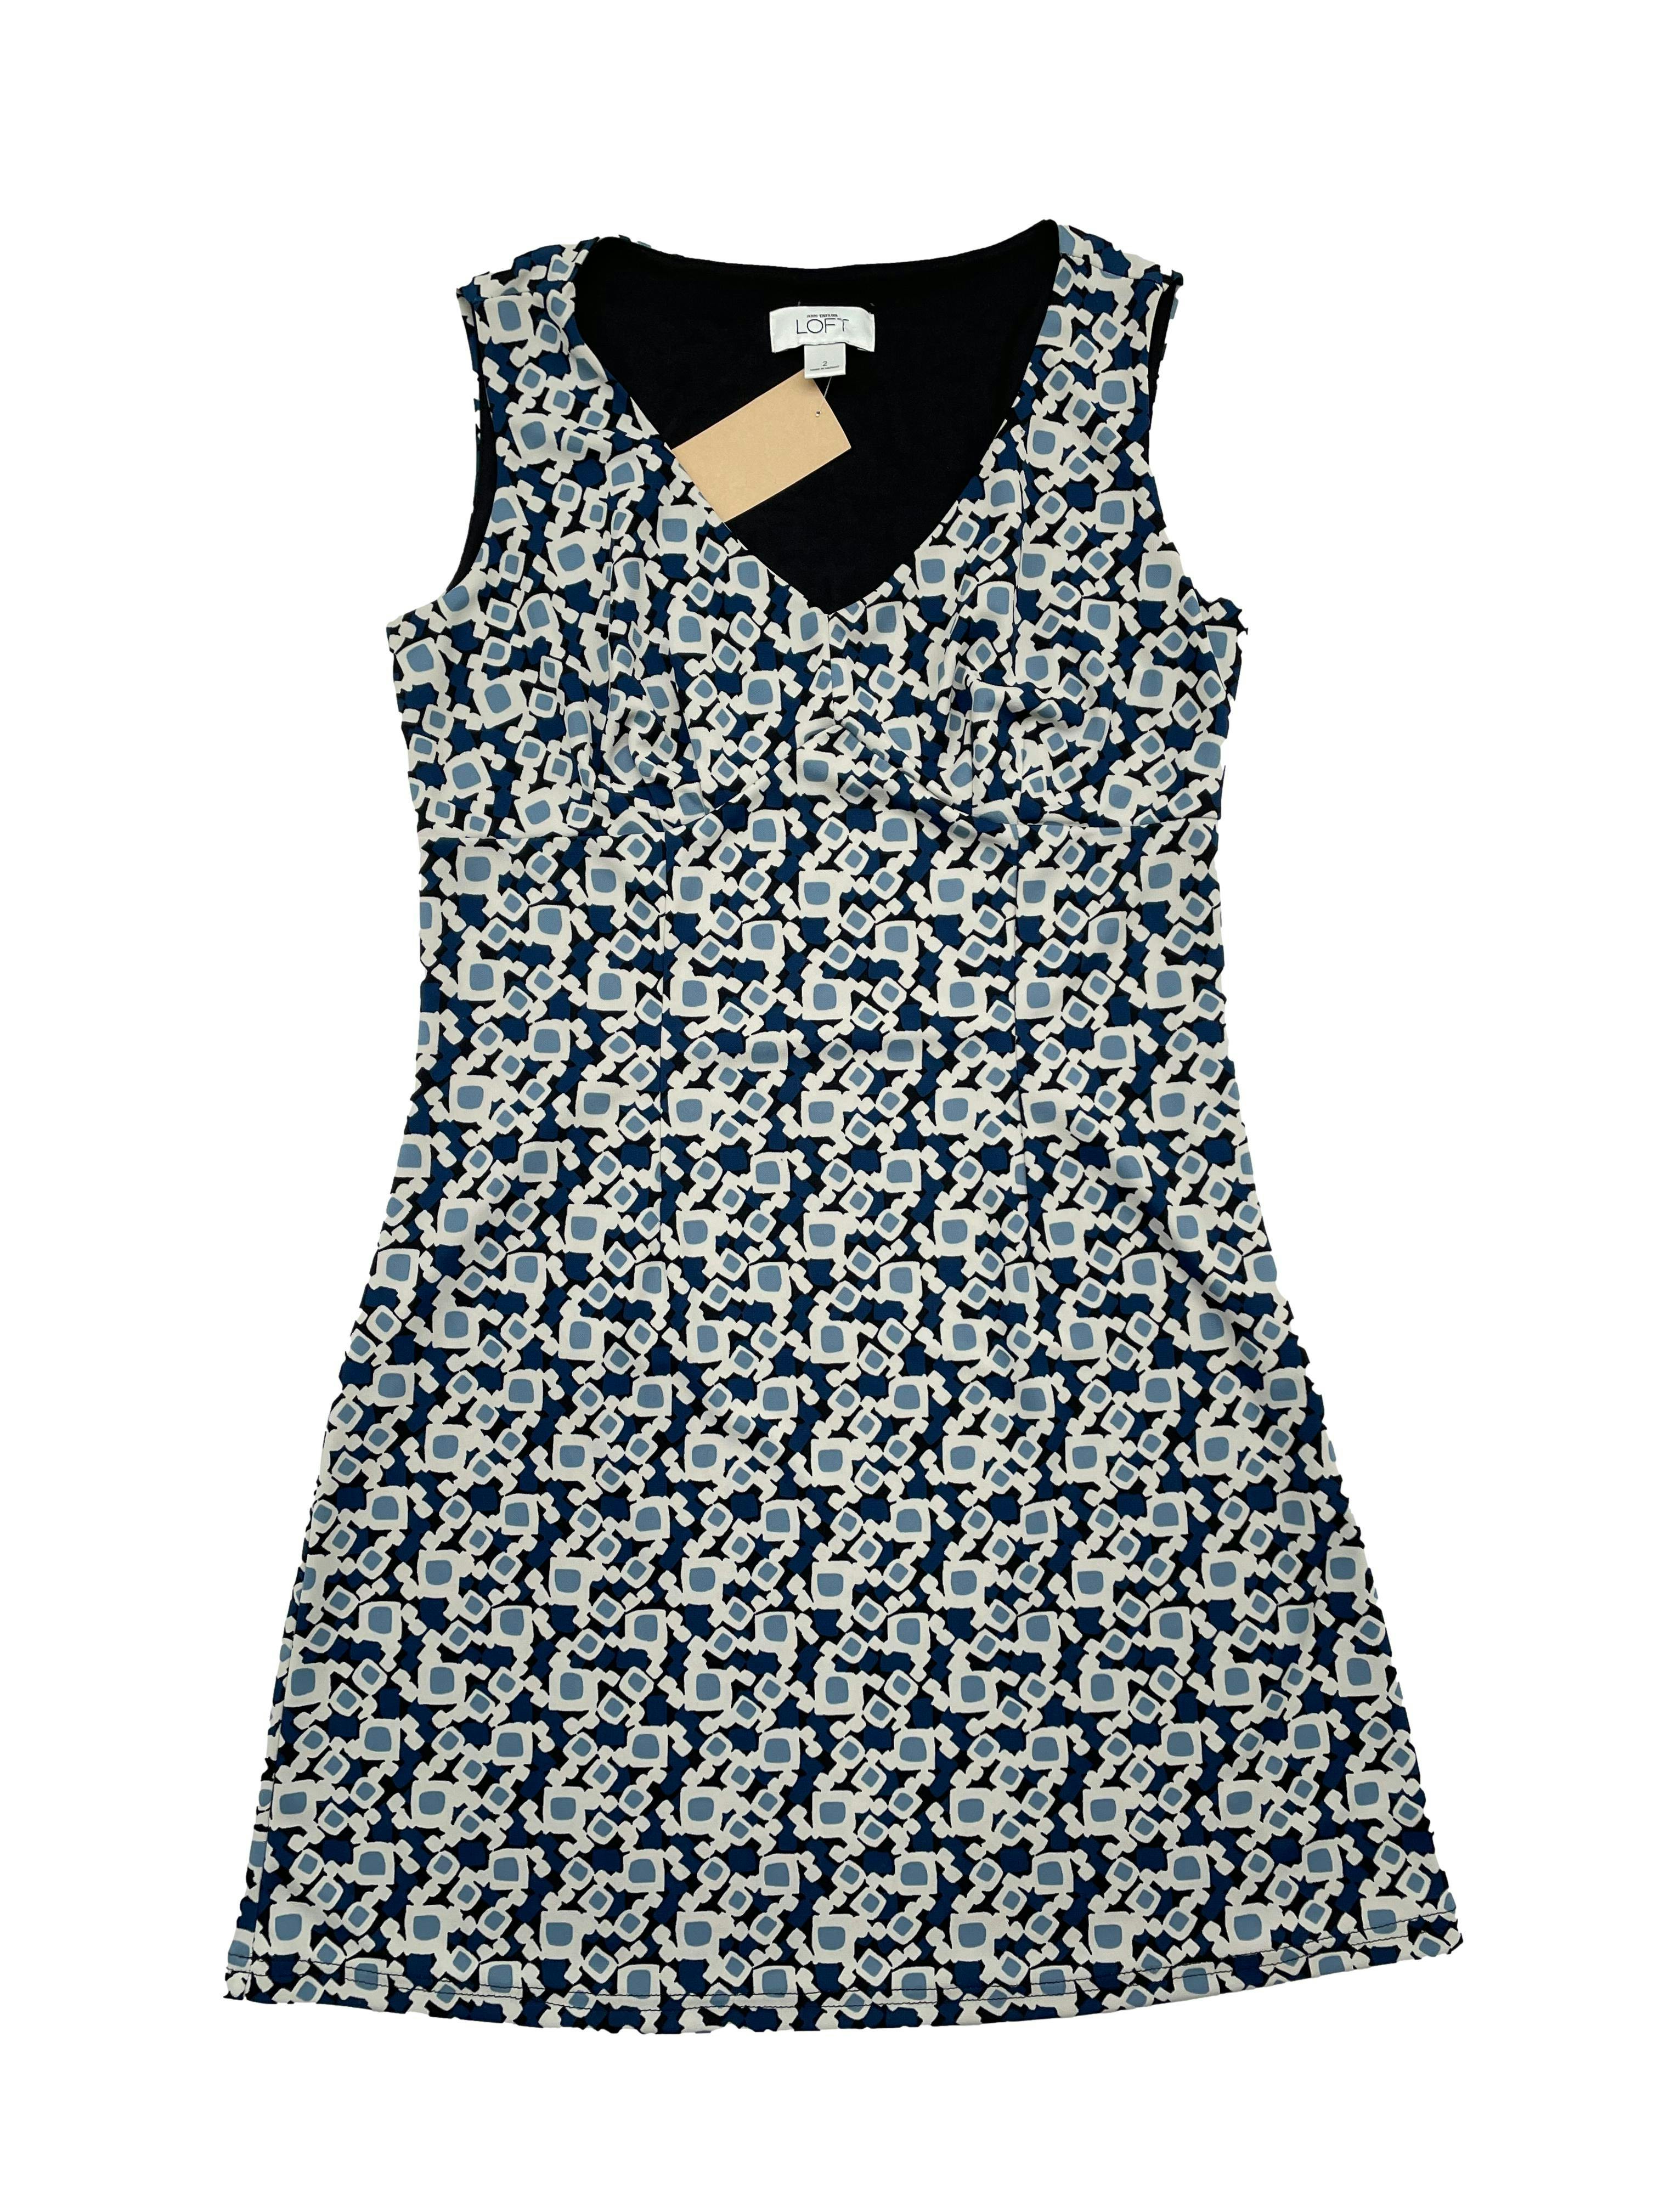 Vestido Ann Taylor Loft estampado en tonos azules con forro, escote en V, pliegues en busto, pinzas y cierre lateral invisible. Busto 90 cm, Largo 80cm.